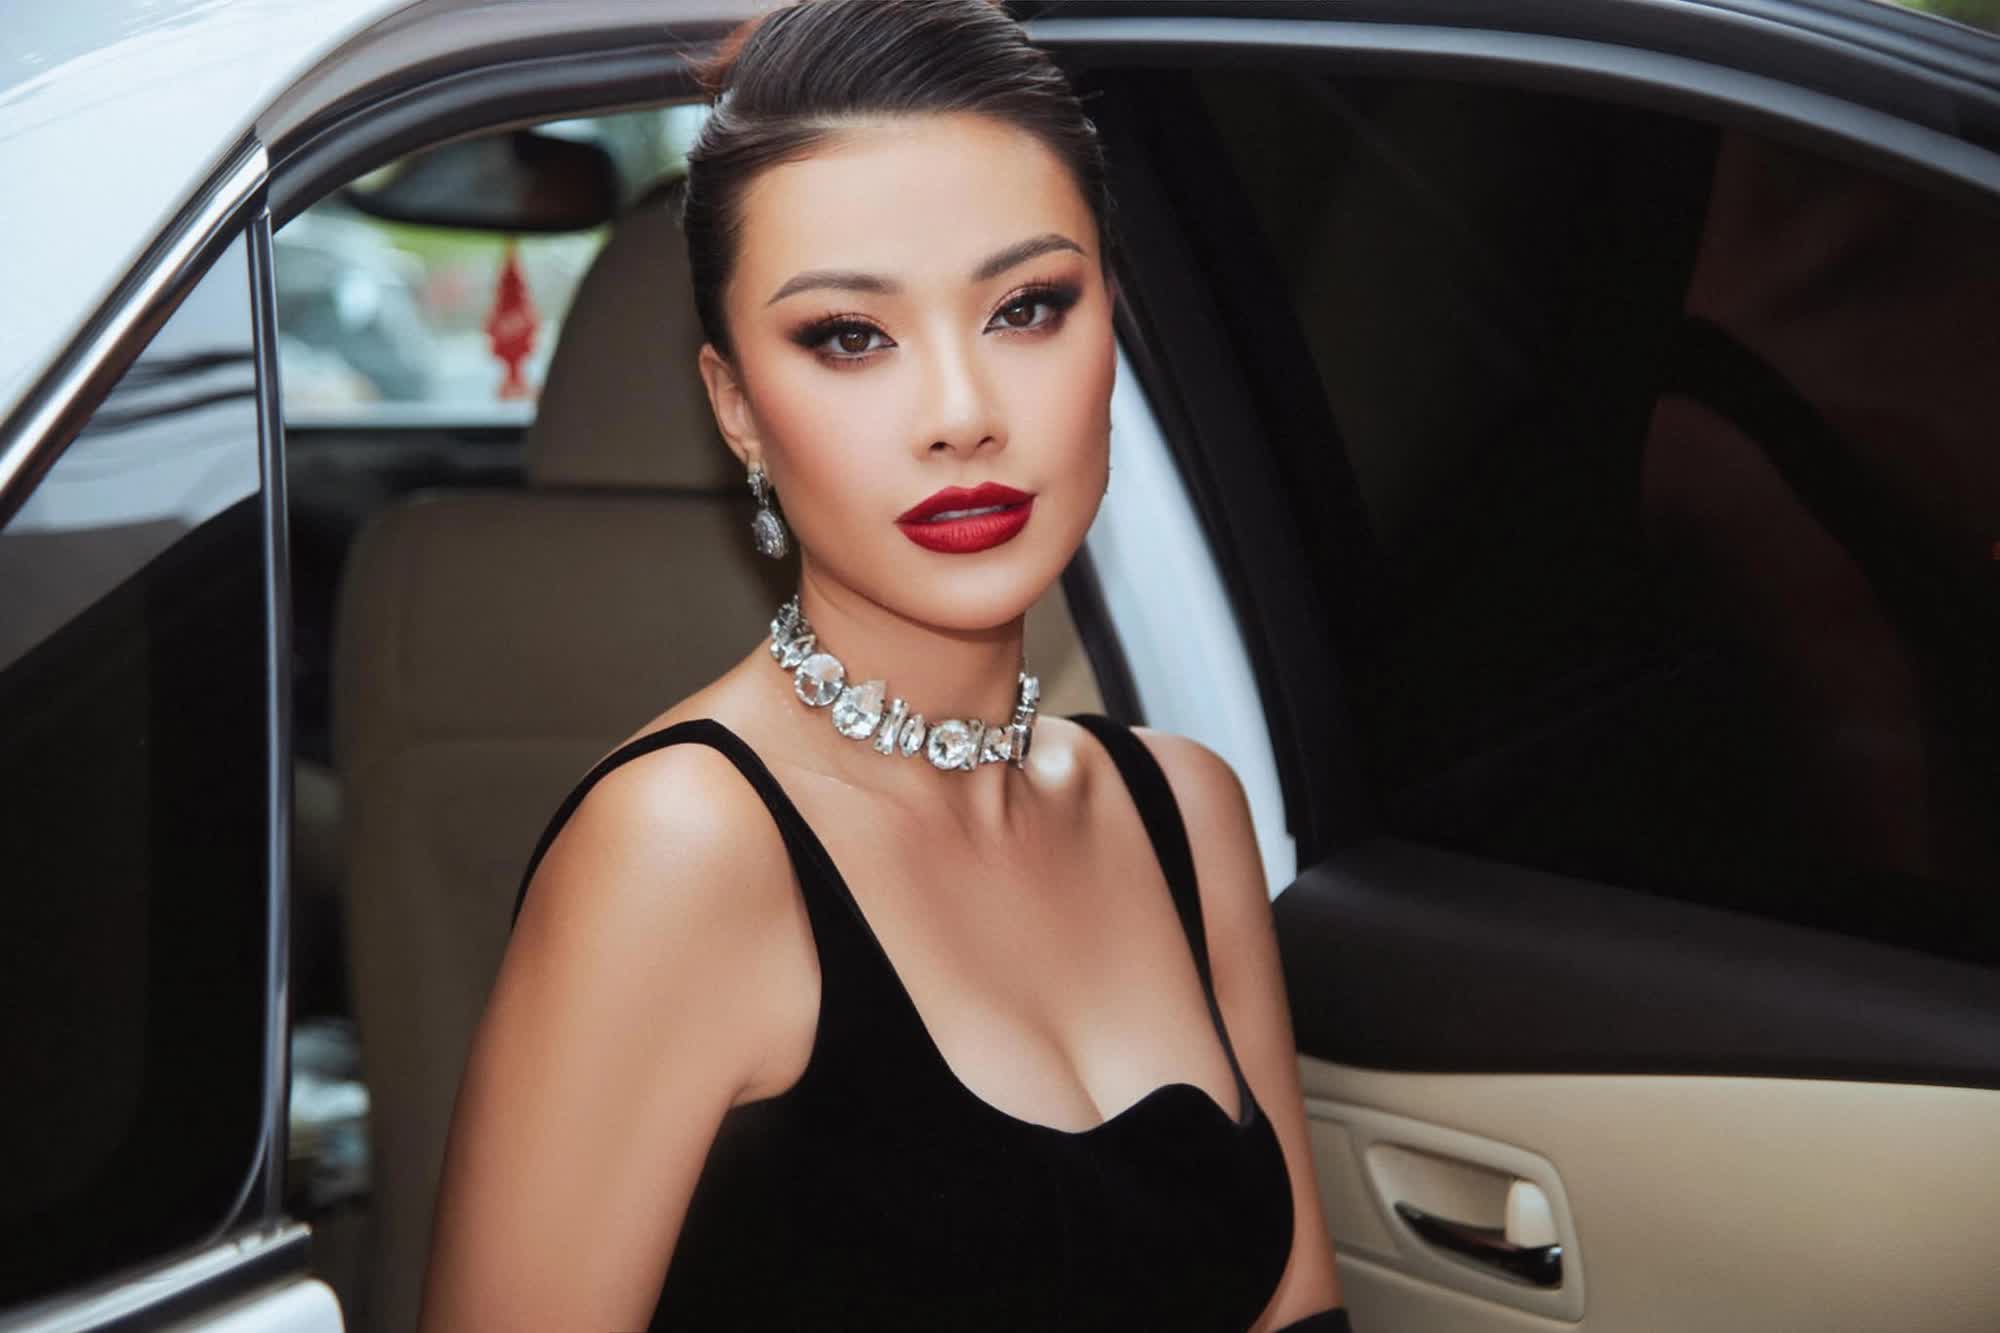 Á hậu Kim Duyên 3 năm sau Hoa hậu Hoàn vũ Việt Nam 2019: Đoạt danh hiệu lớn ở quốc tế nhưng vẫn bị nhắc lùm xùm học vấn - Ảnh 1.